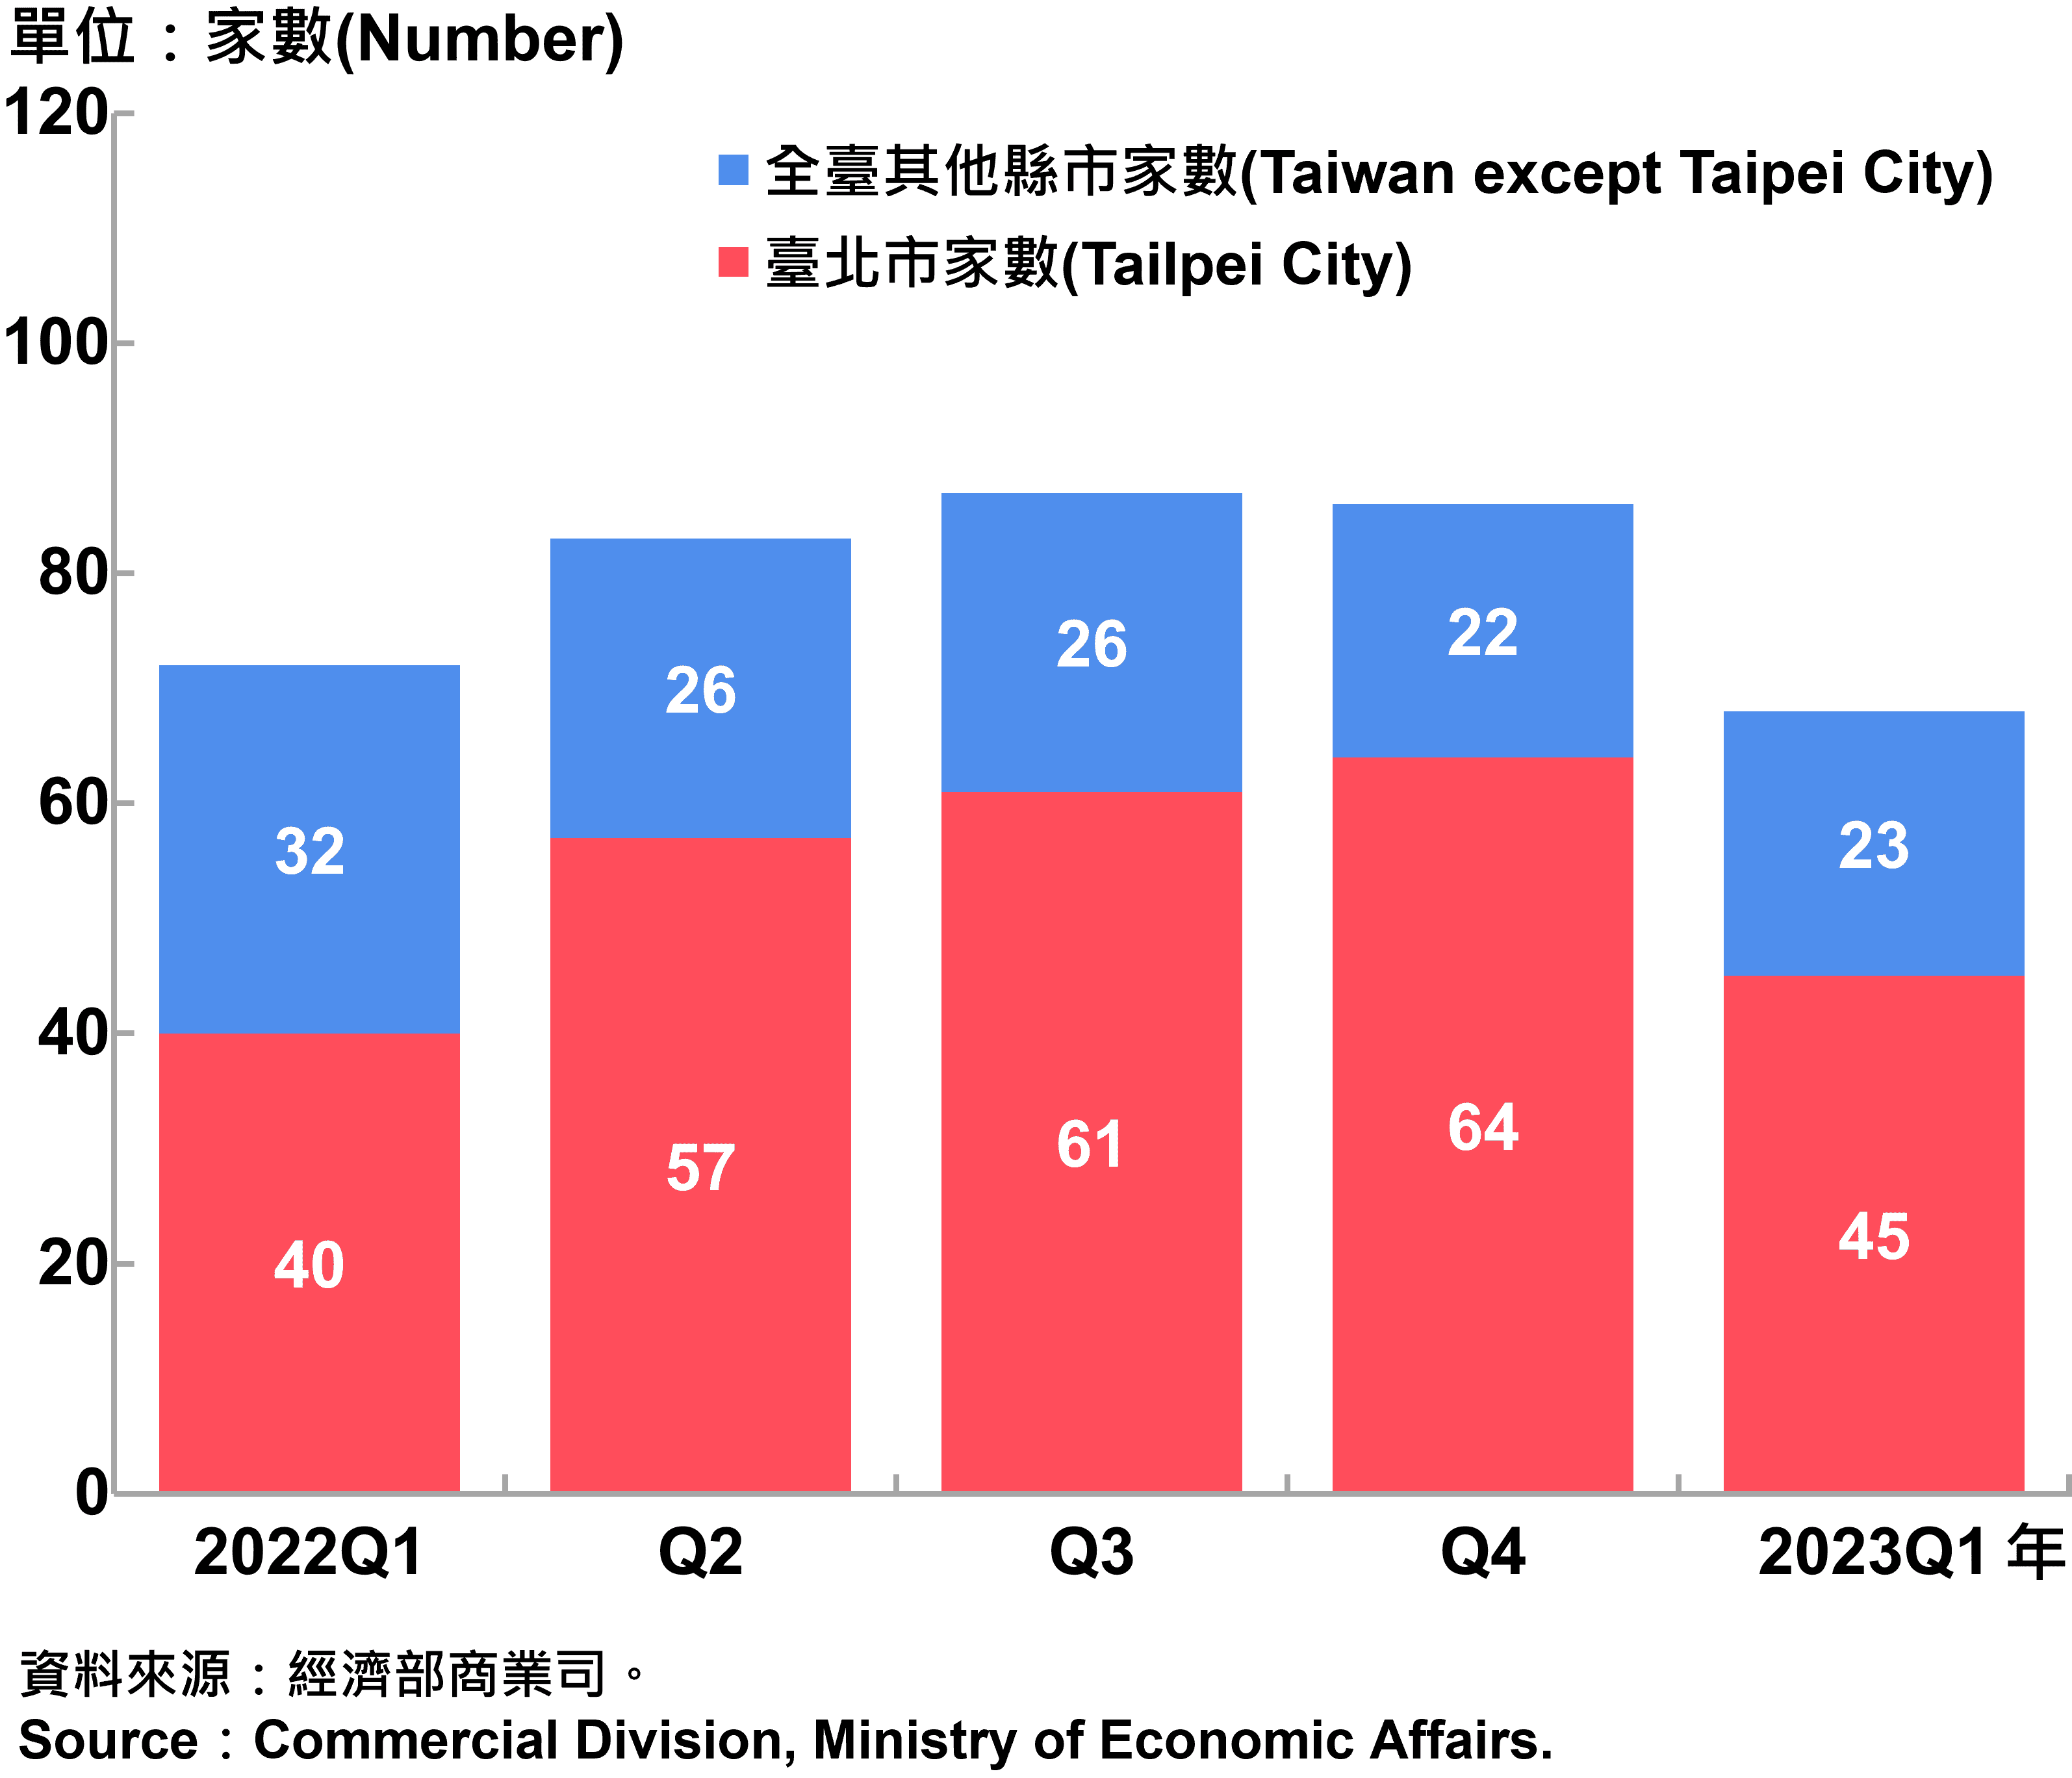 臺北市外商公司新設立家數—2023Q1 Number of Newly Established Foreign Companies in Taipei City—2023Q1